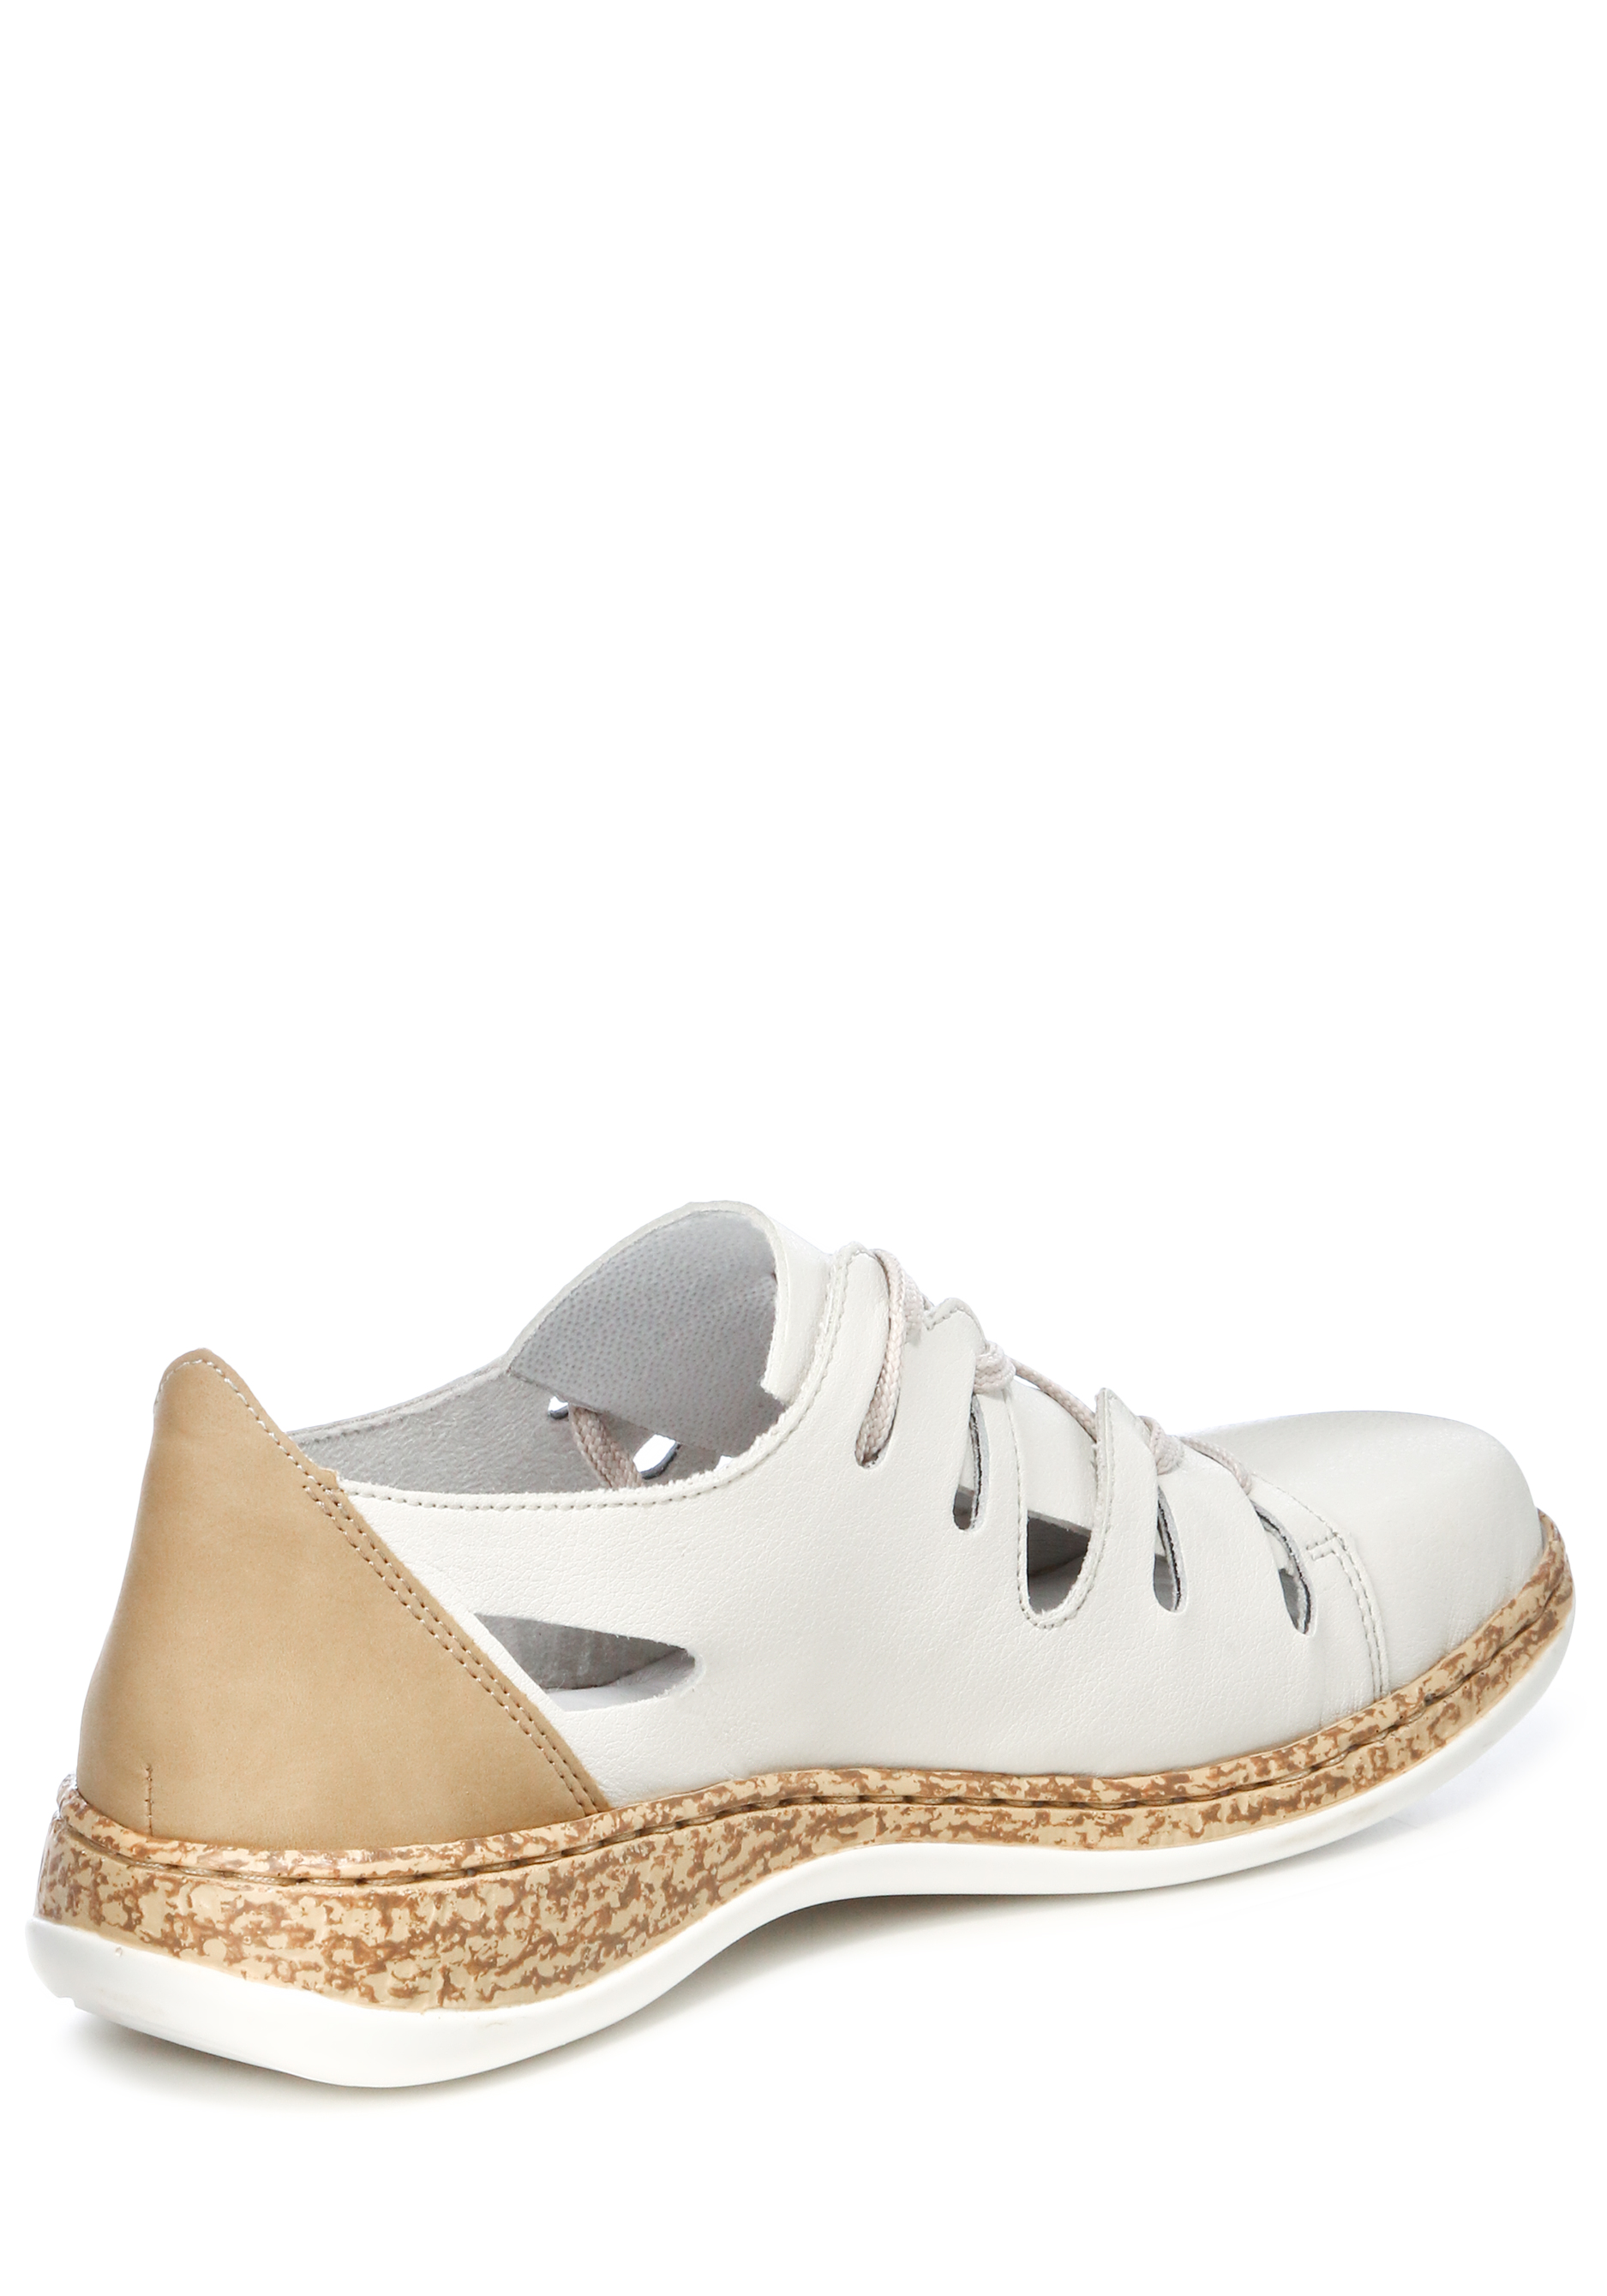 Туфли летние женские "Зои" Remonte, цвет белый, размер 37 - фото 3